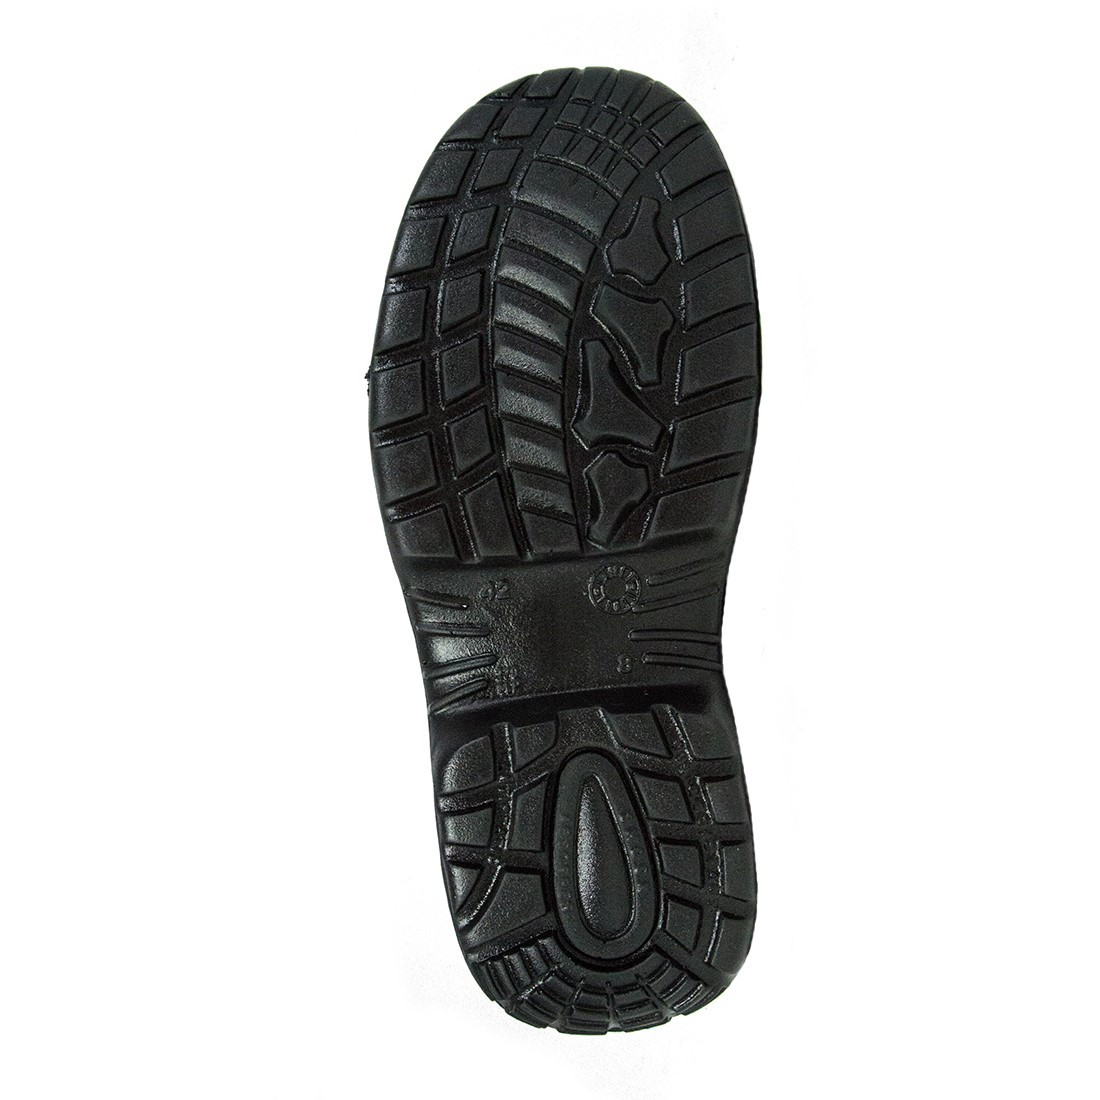 Pigalle Boot S3 SRC - Les chaussures de protection